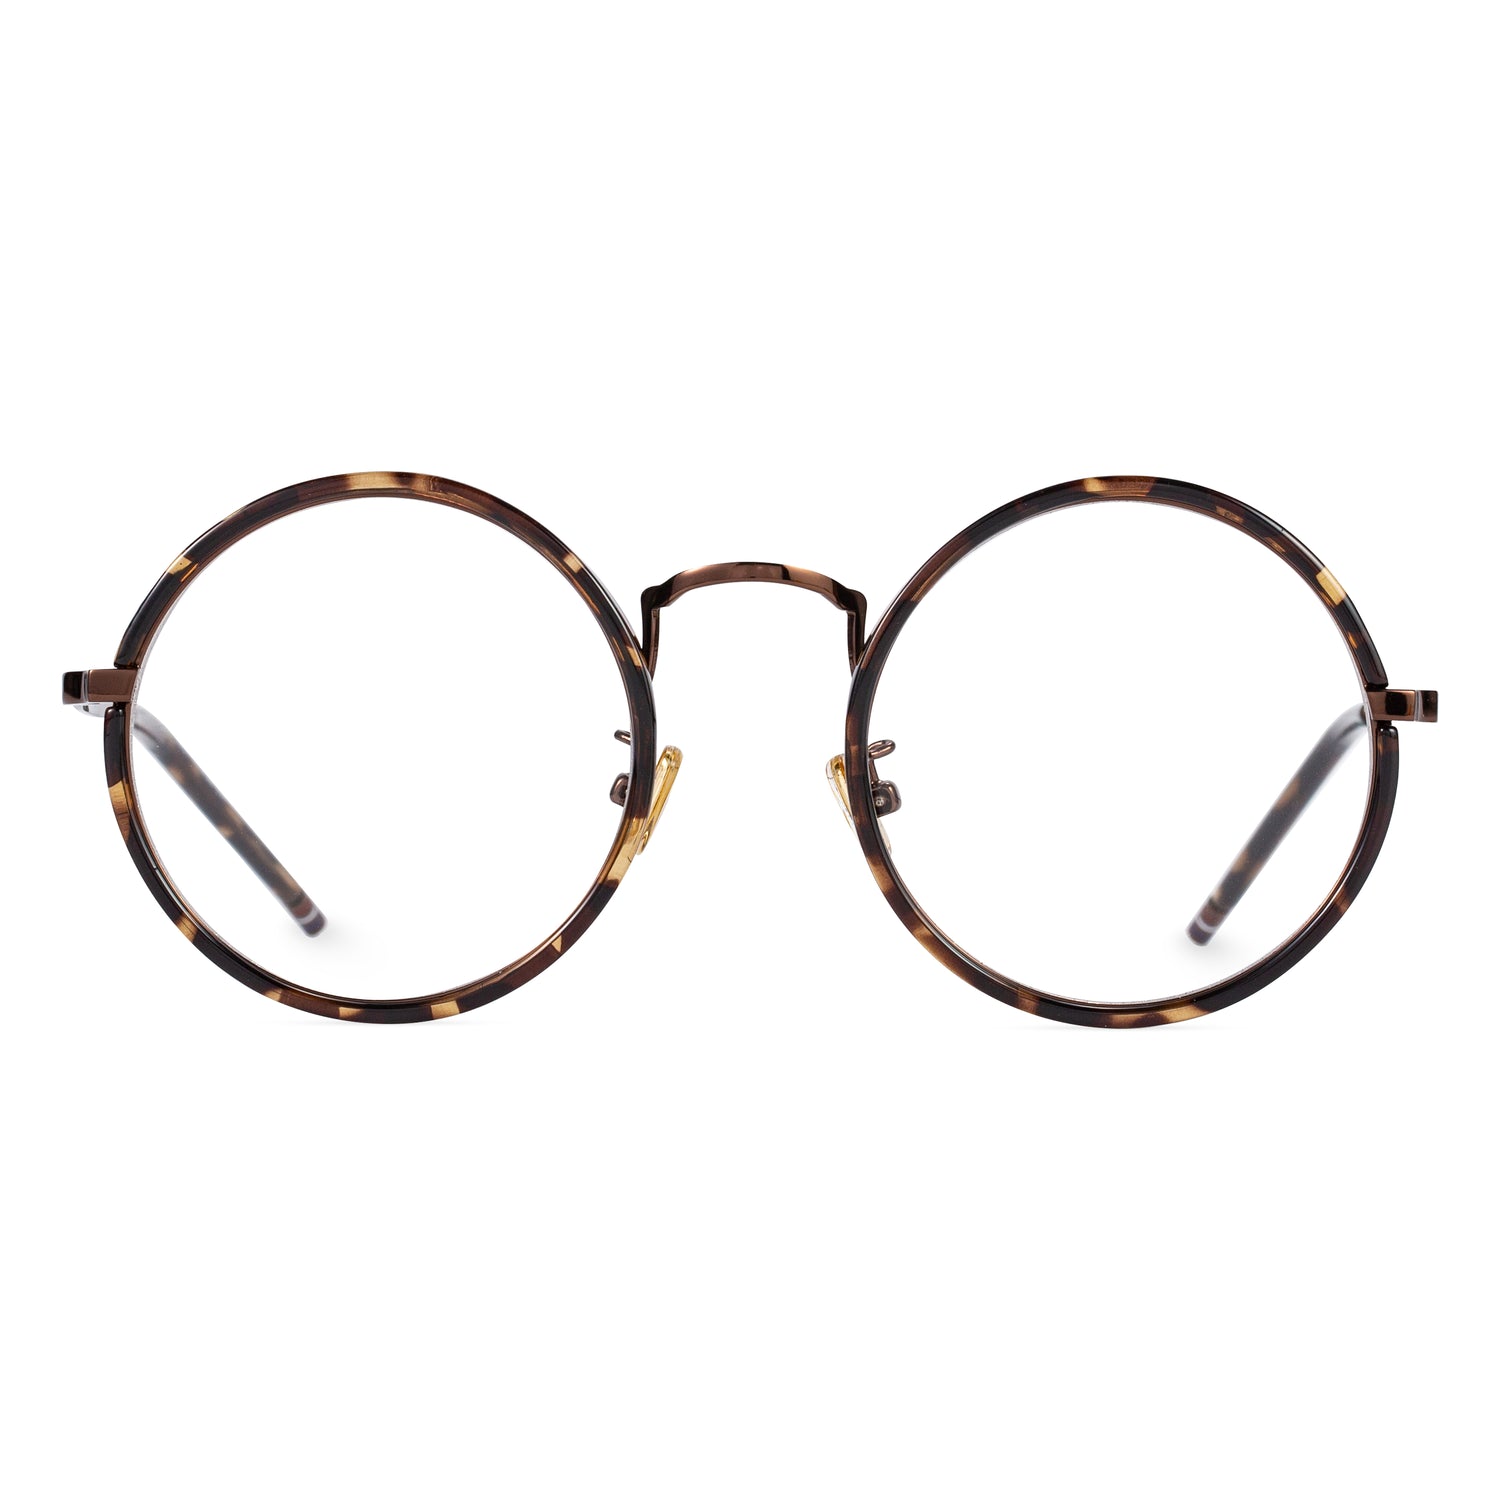 Round Prescription Glasses Frames Online for Women/Men丨ELKLOOK